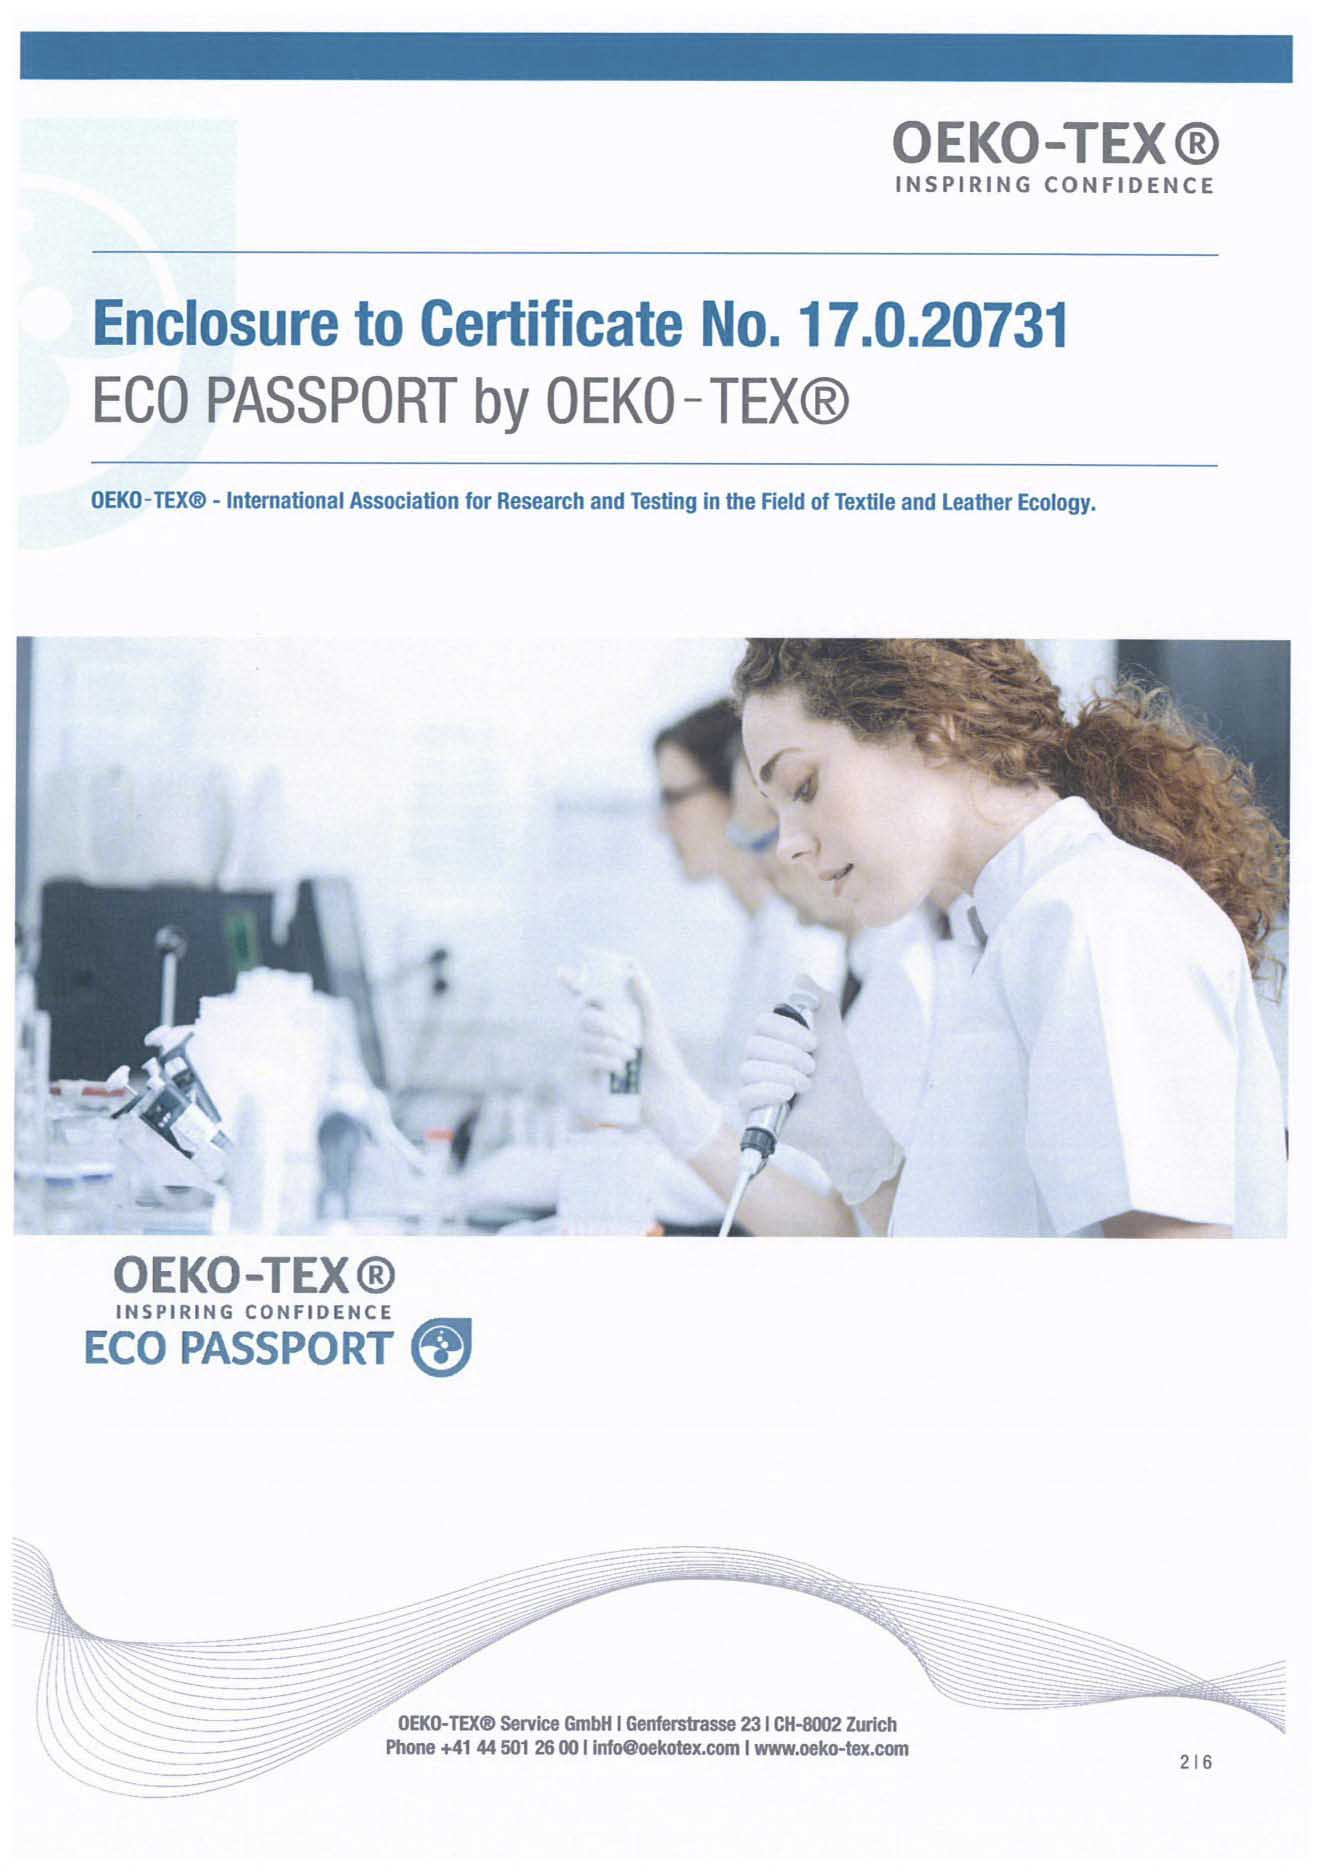 OEKO Certificate